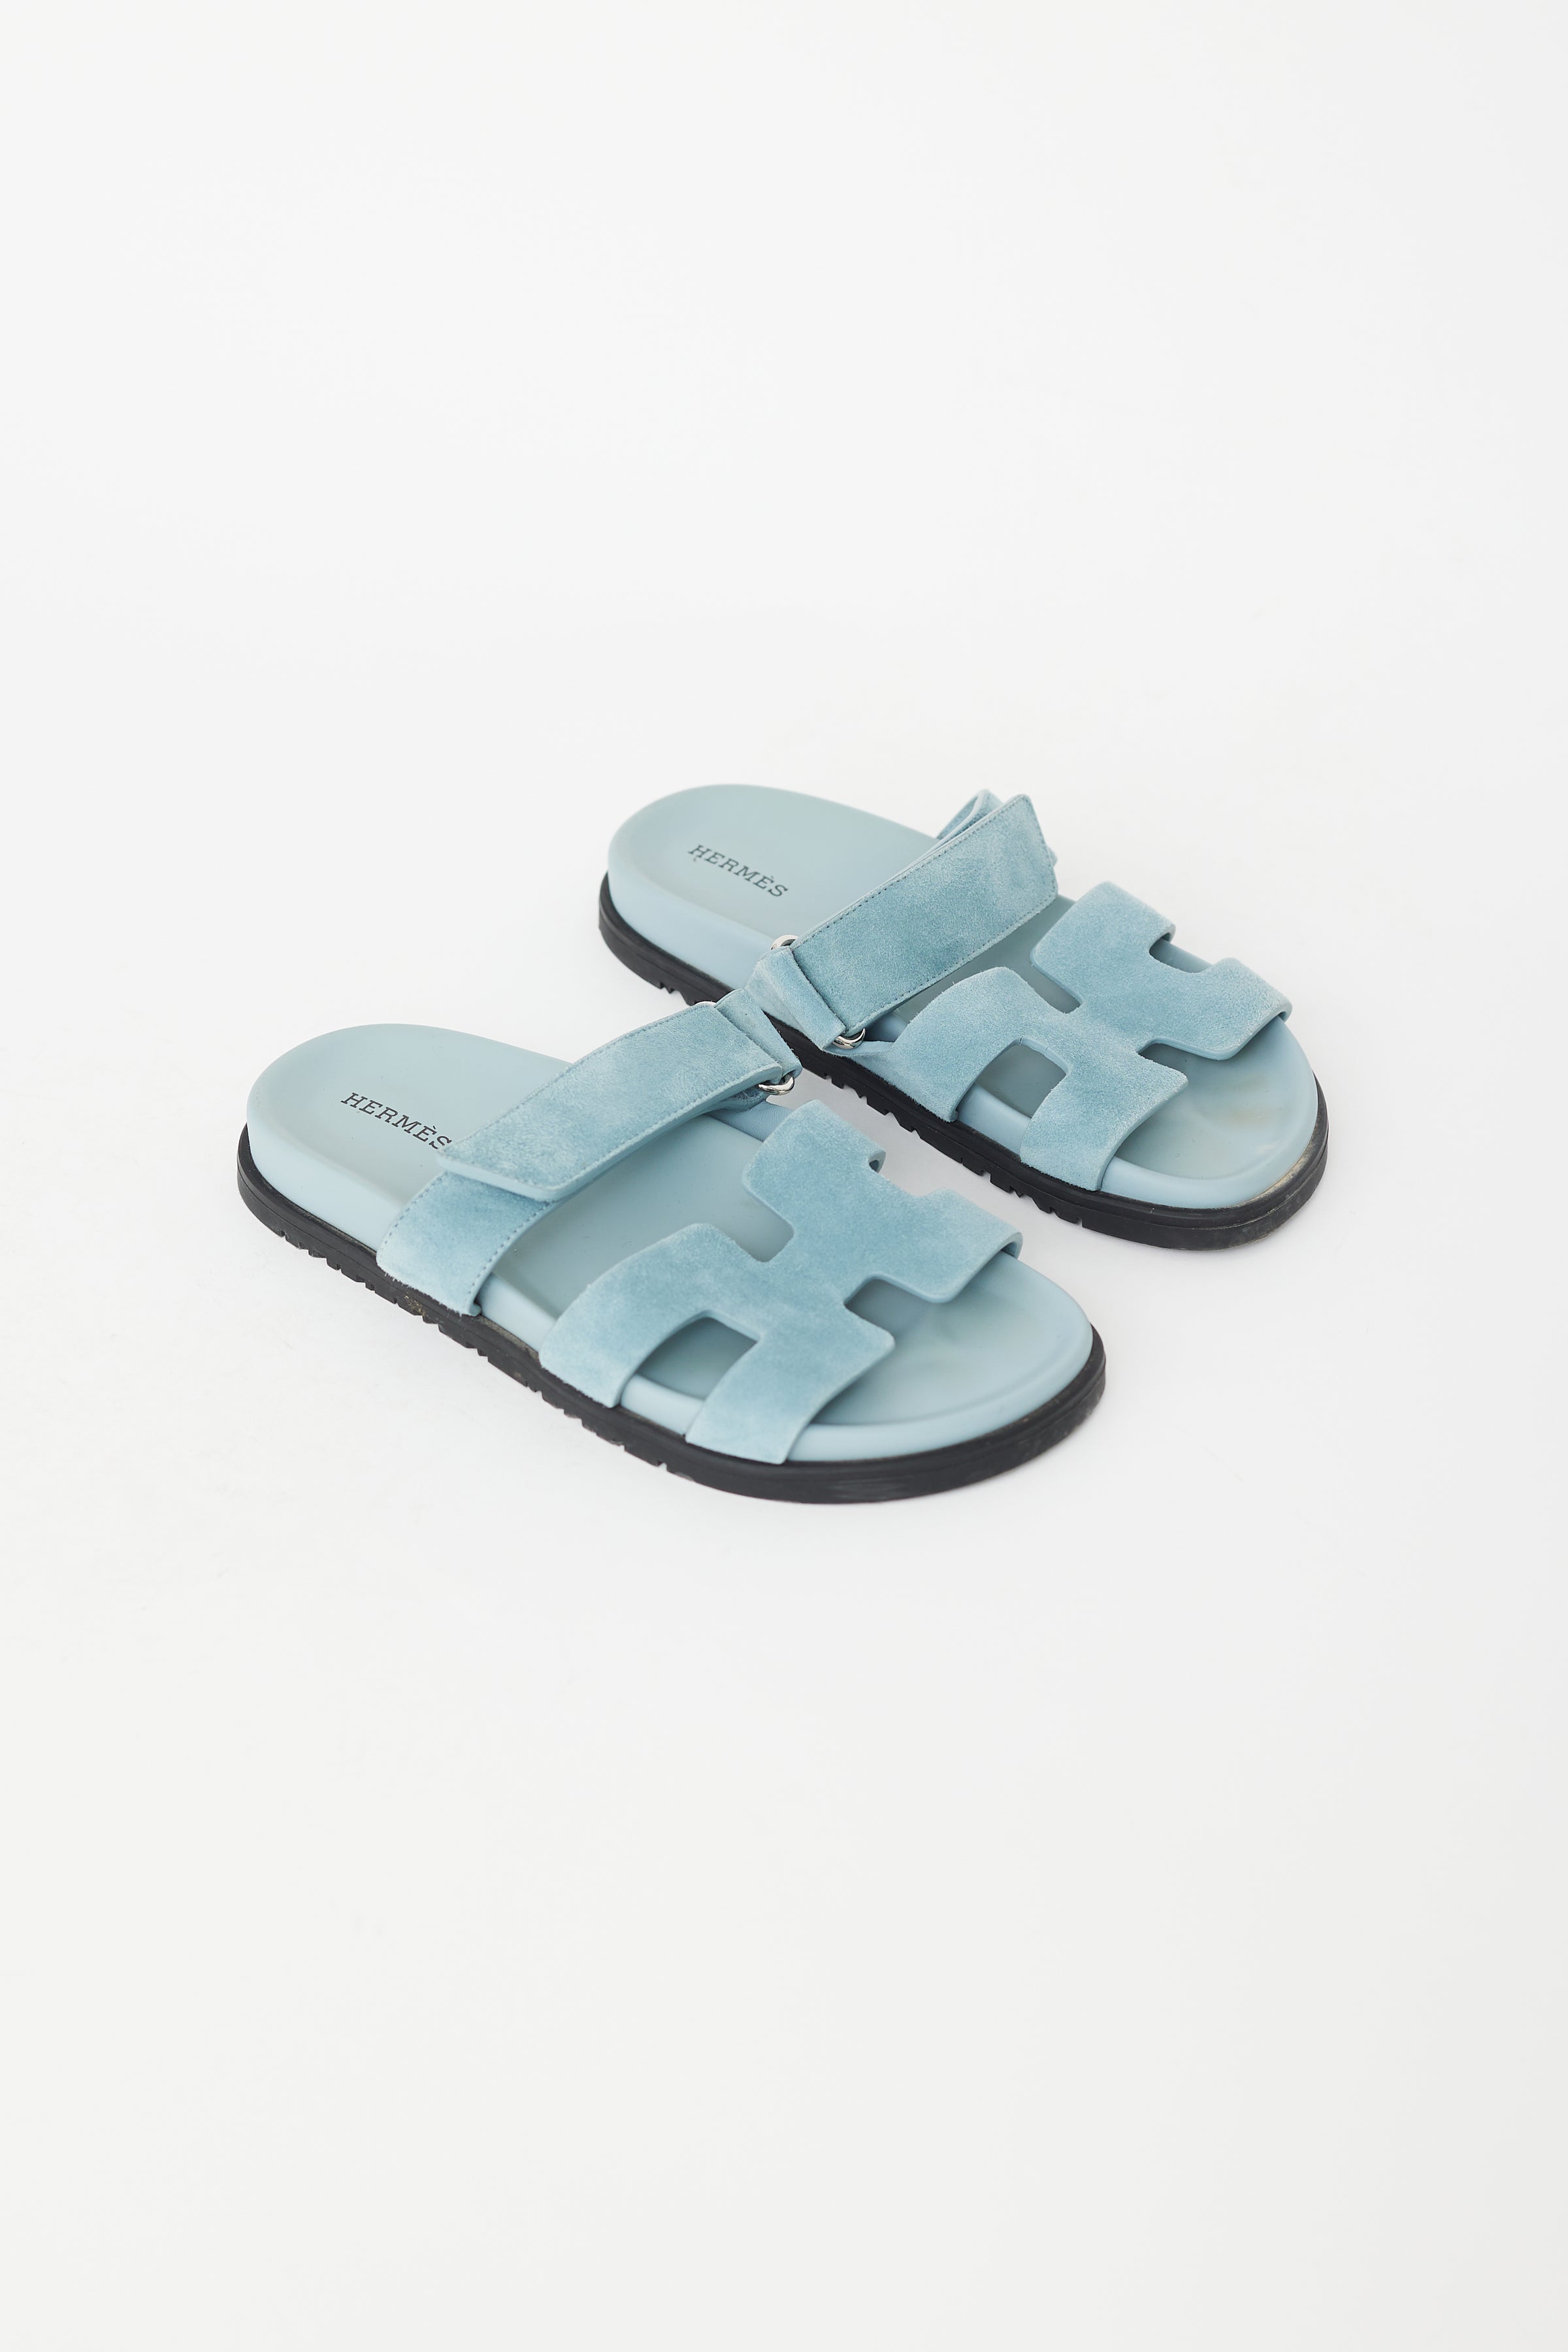 Hermès // Blue Suede Chypre Sandal – VSP Consignment